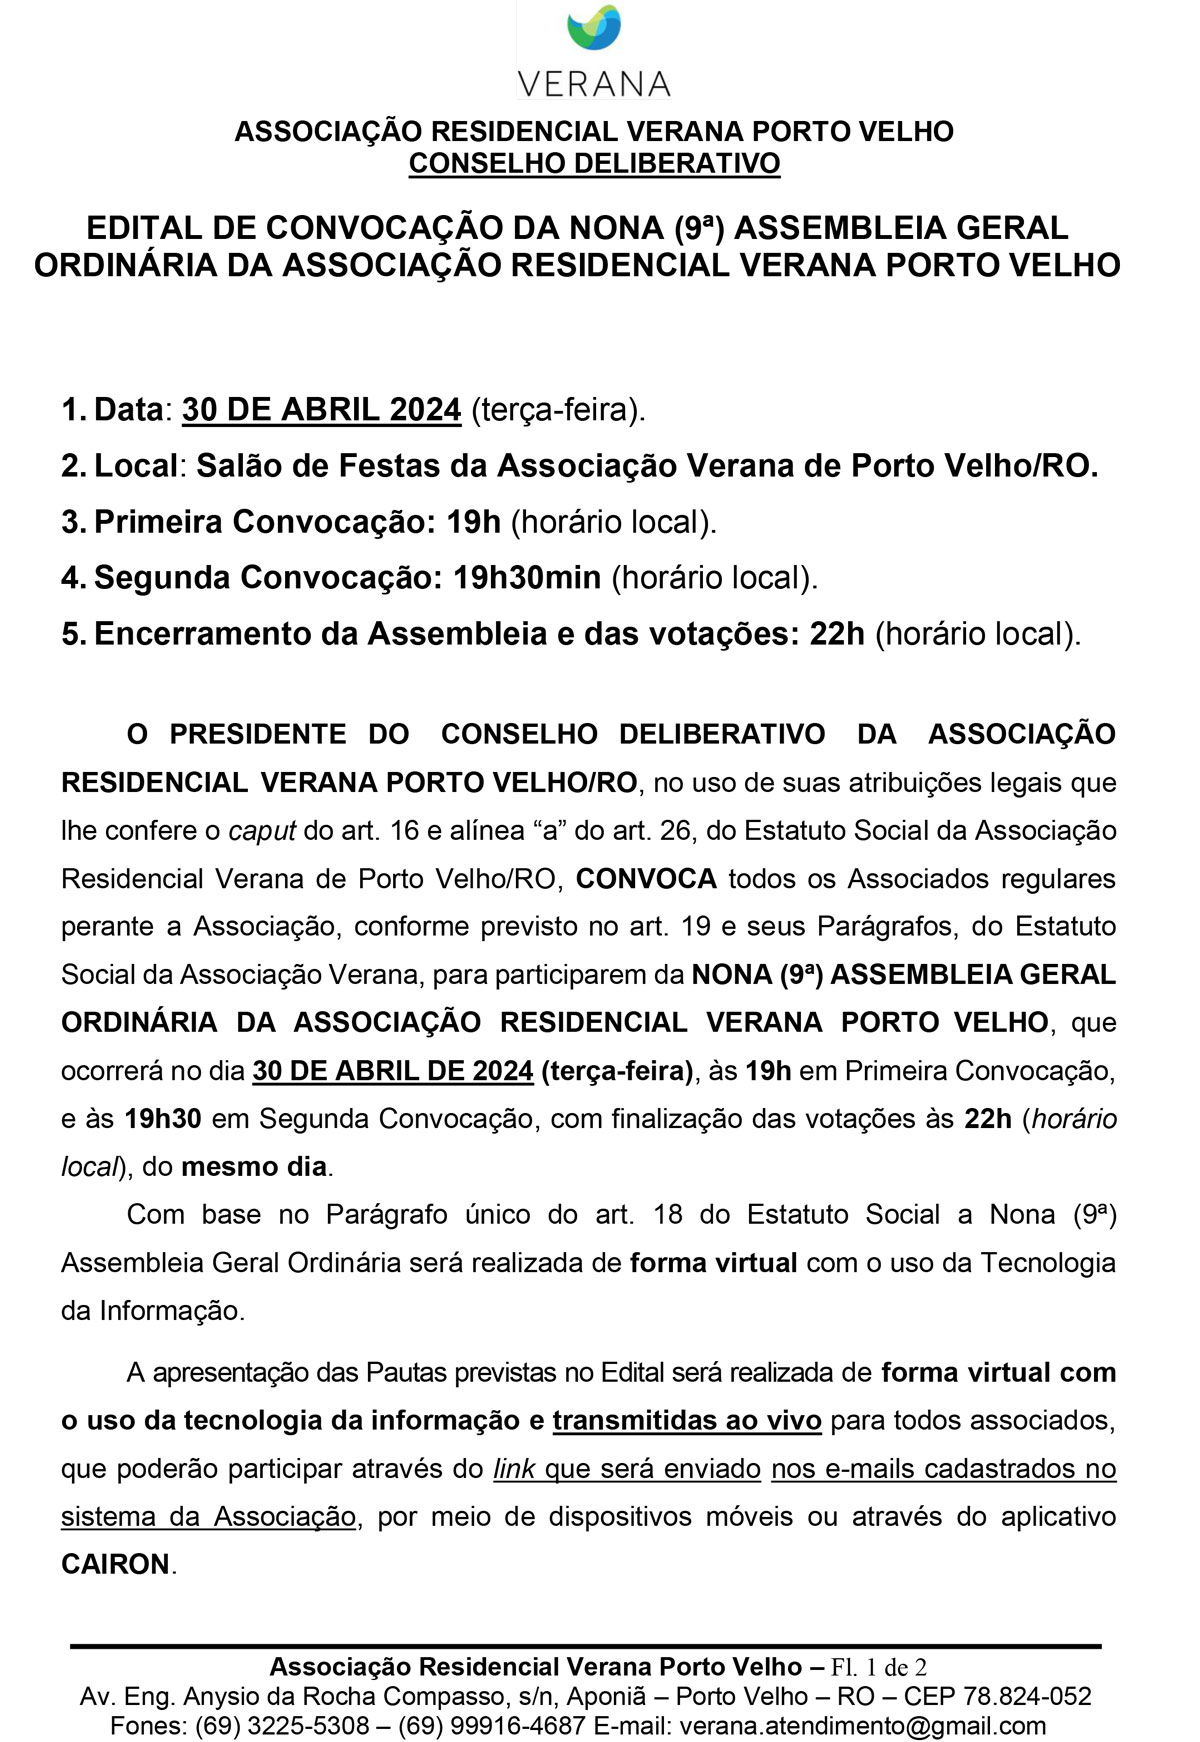 EDITAL DE CONVOCAÇÃO DA NONA (9ª) ASSEMBLEIA GERAL ORDINÁRIA DA ASSOCIAÇÃO RESIDENCIAL VERANA PORTO VELHO - News Rondônia